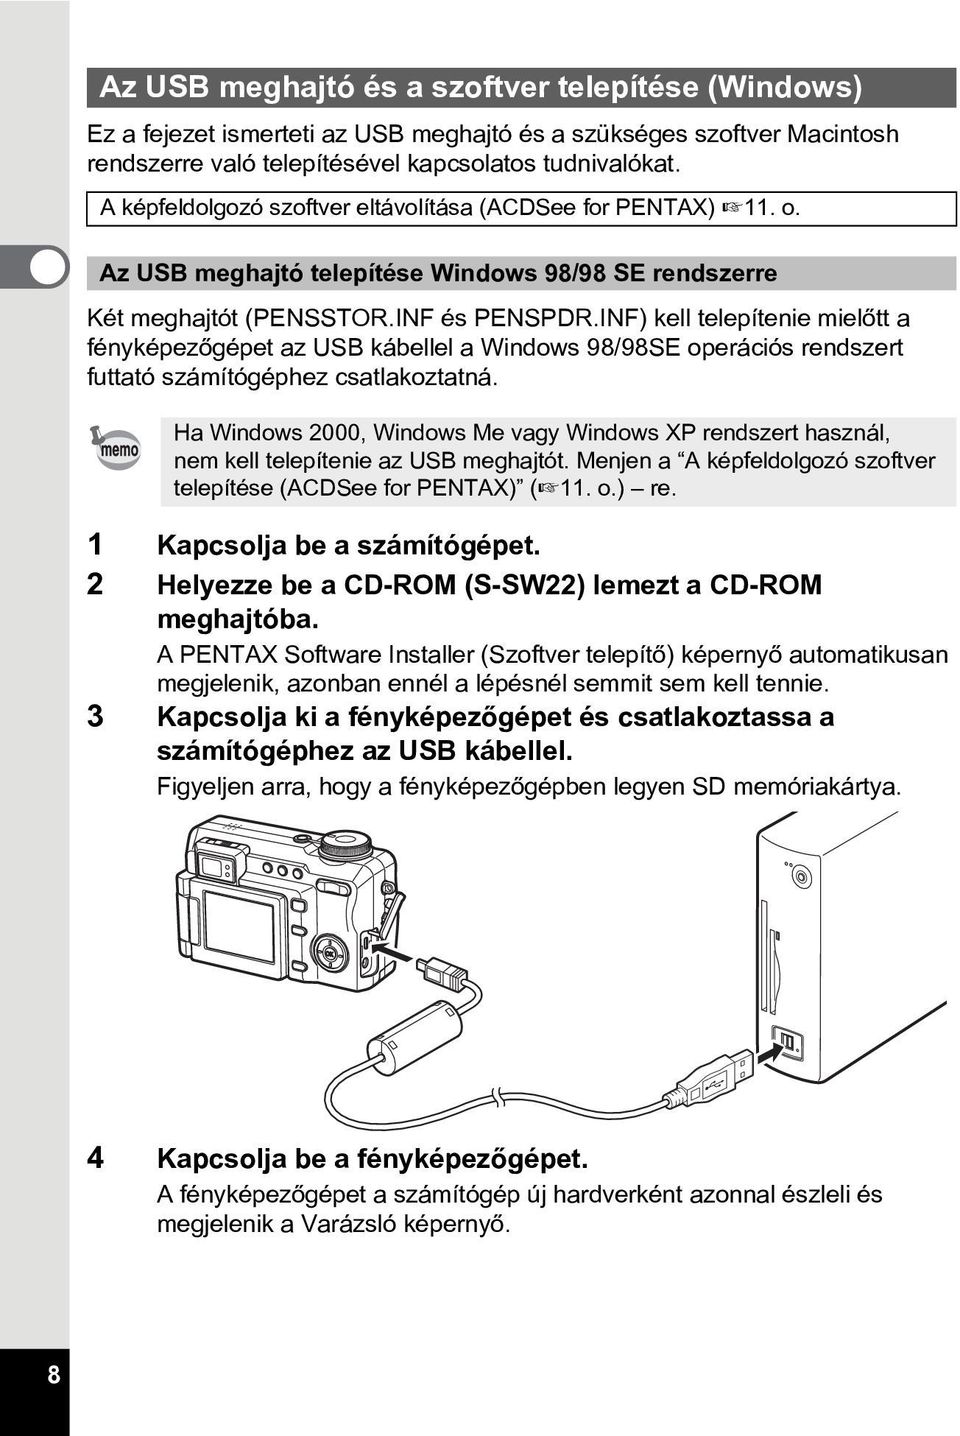 INF) kell telepítenie mielõtt a fényképezõgépet az USB kábellel a Windows 98/98SE operációs rendszert futtató számítógéphez csatlakoztatná.